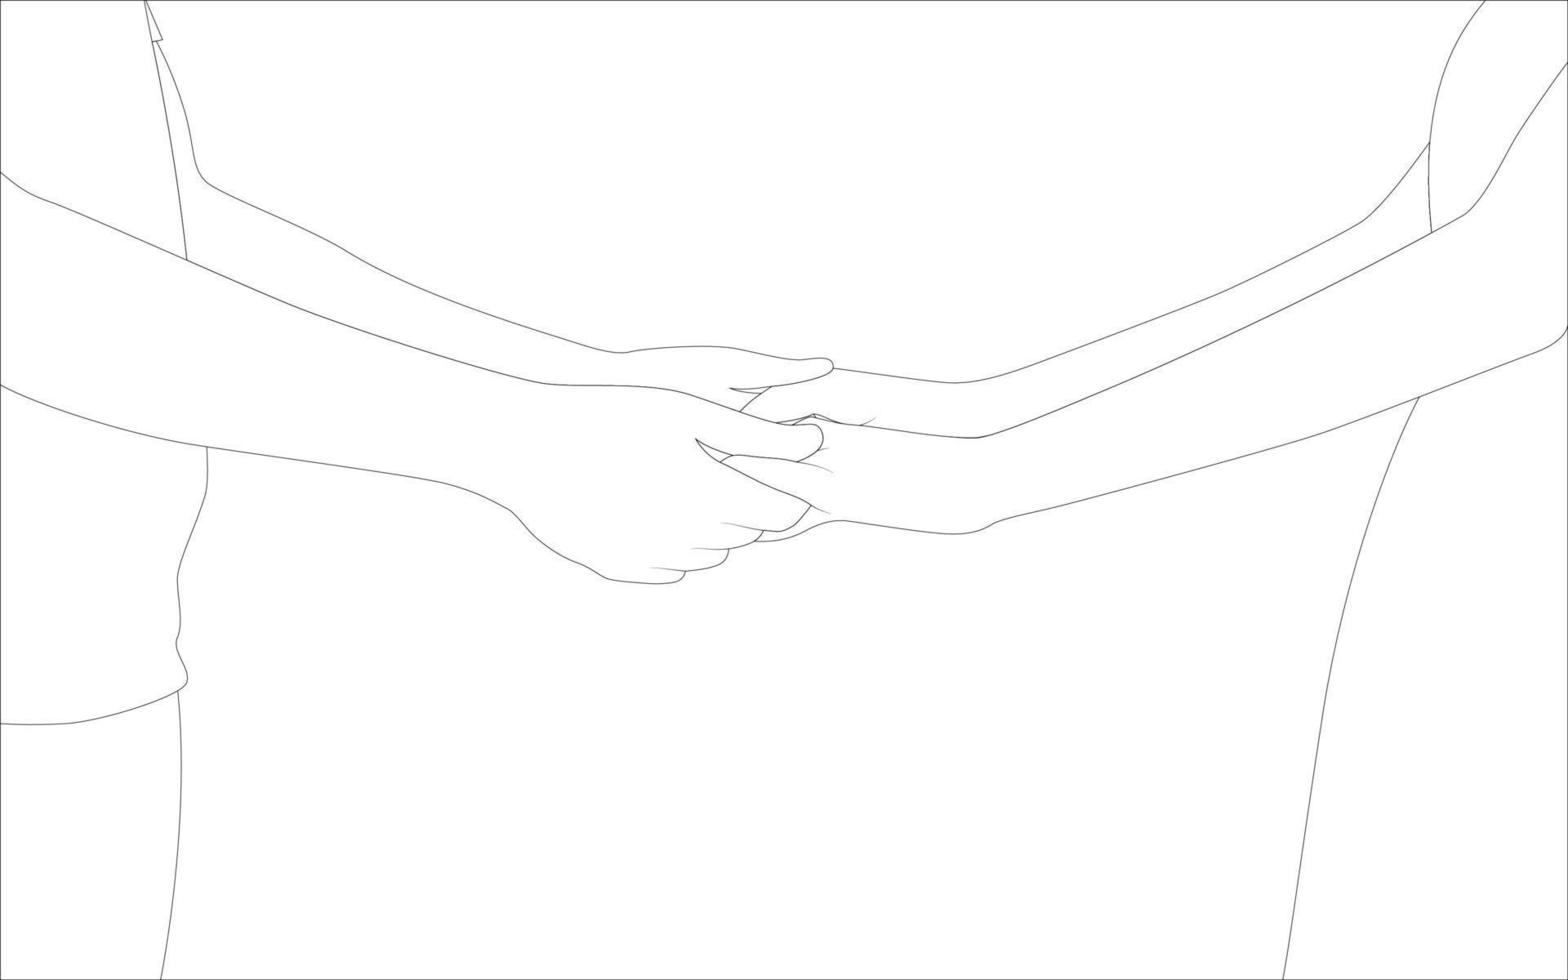 Paar, das Hand hält, Paarcharakterumrissillustration auf weißem Hintergrund, Vektorillustration für Valentinstagprojekte. vektor